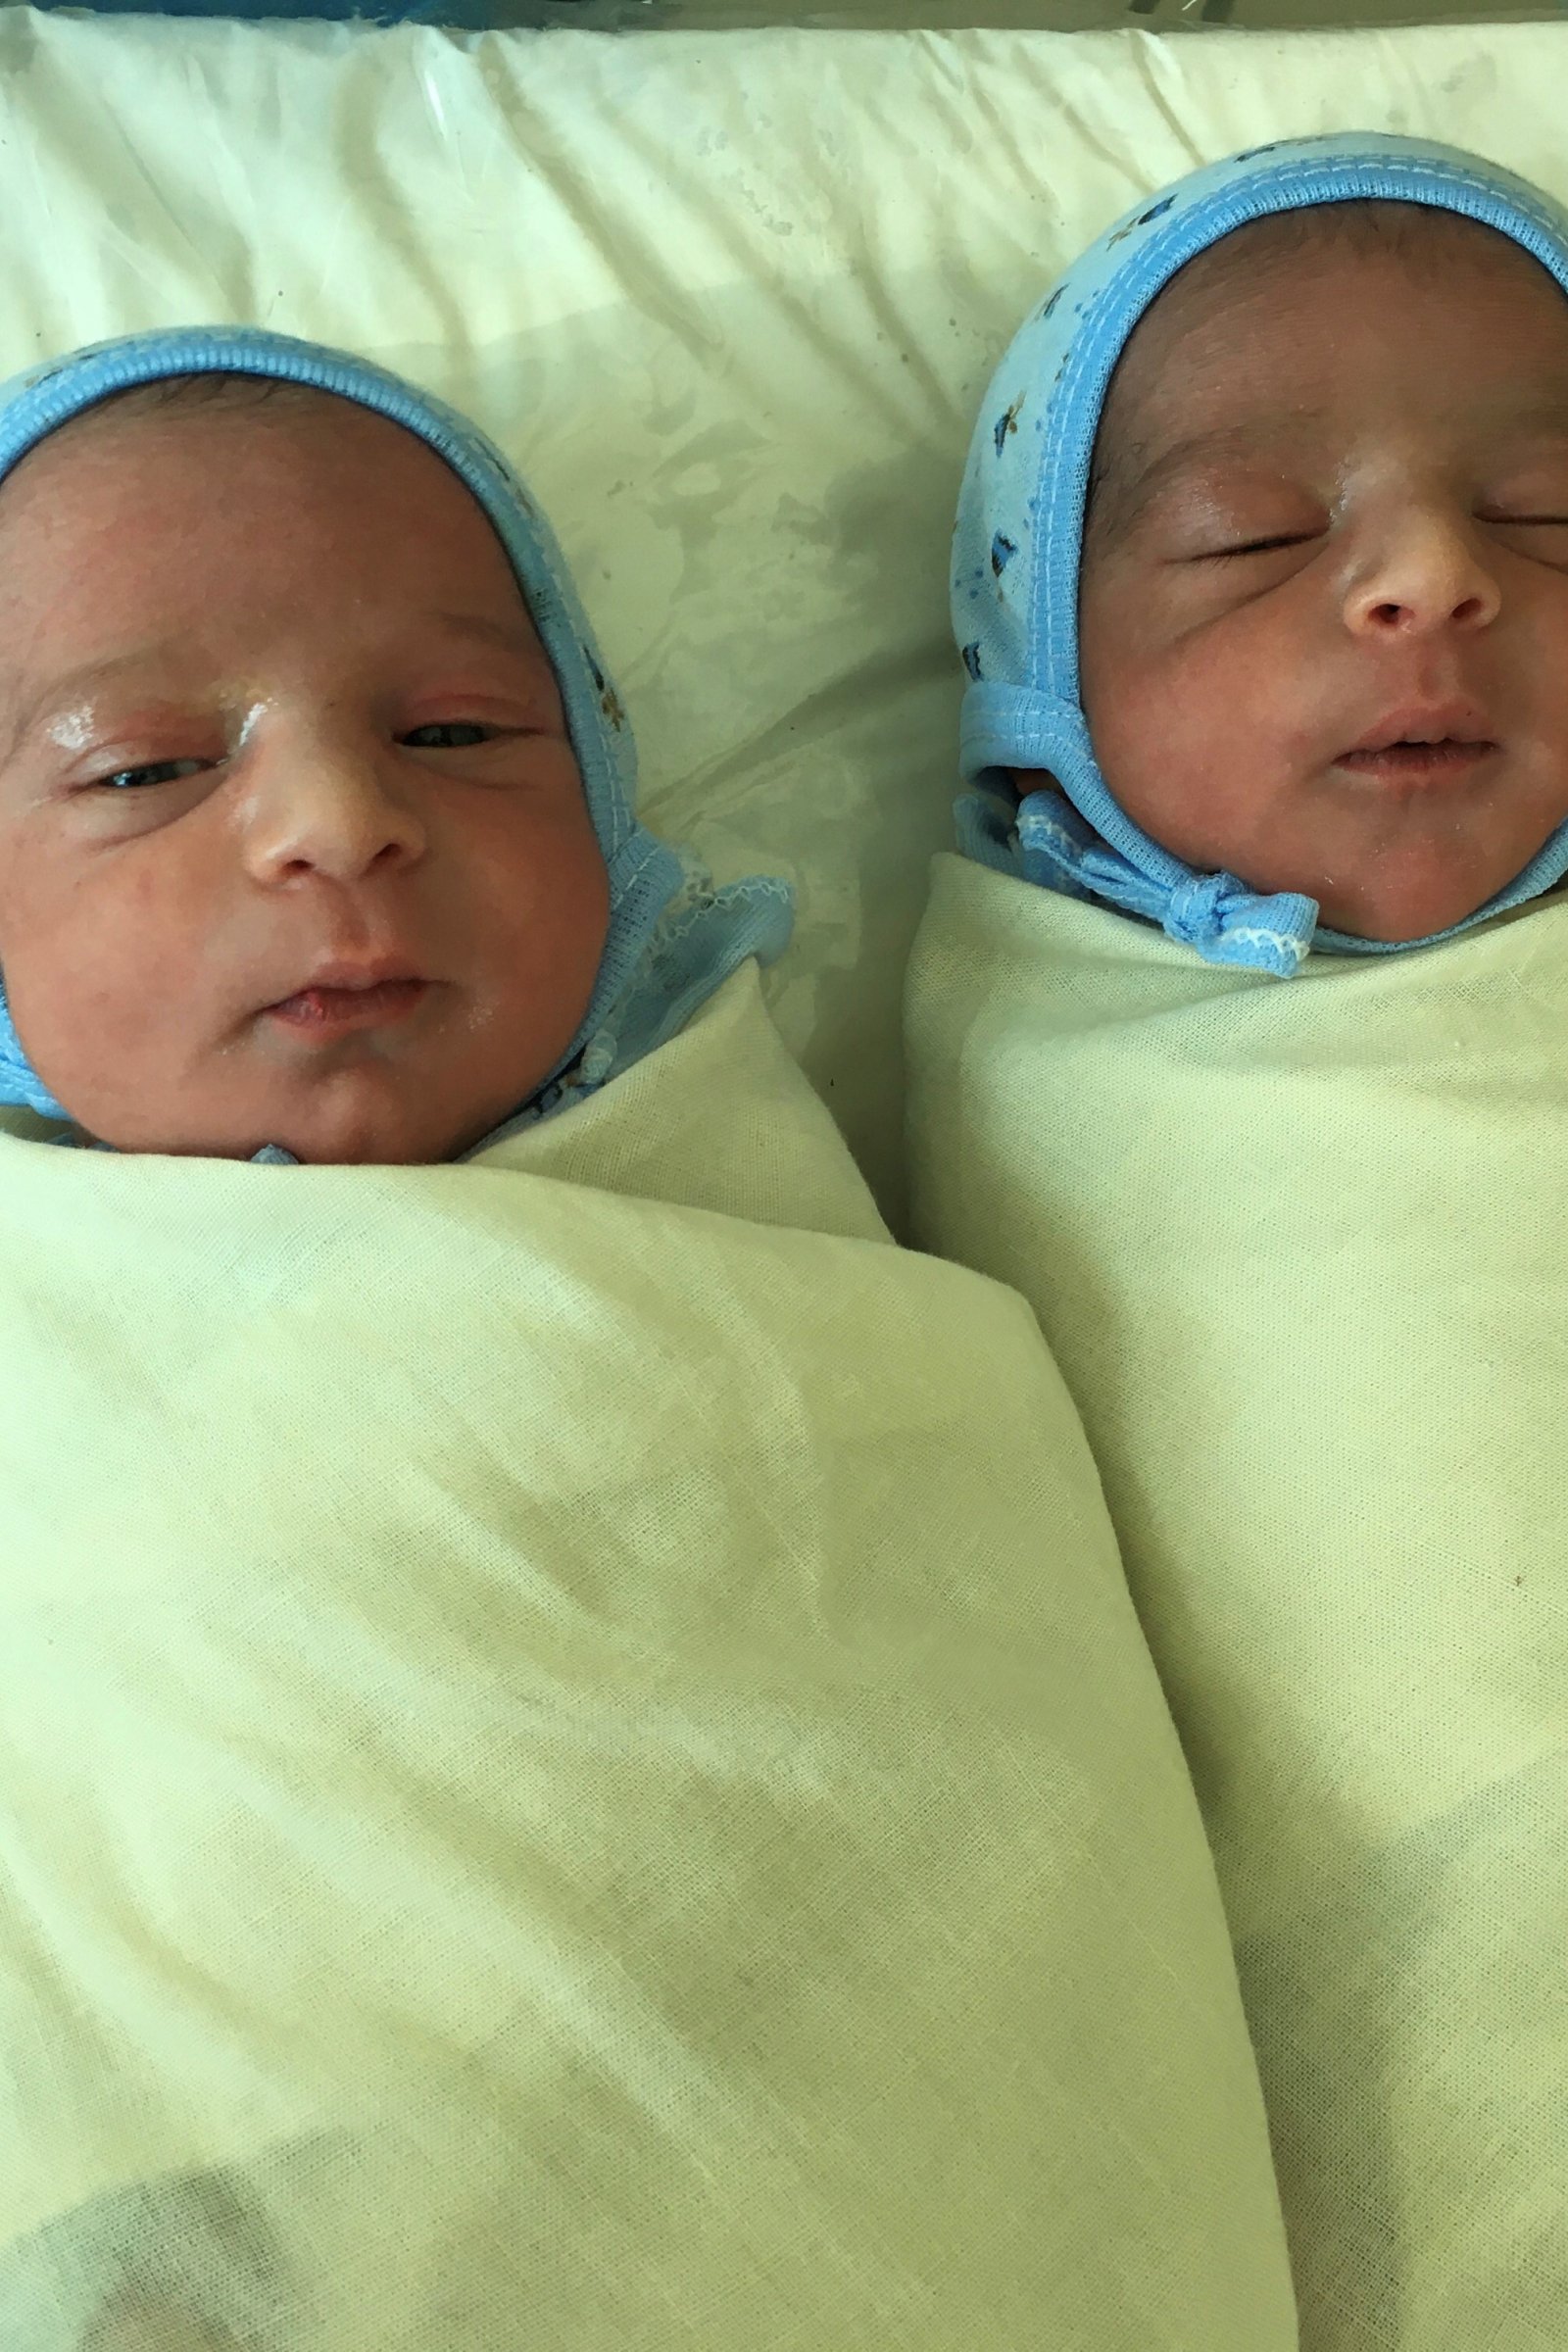 Newborn twins Ayman and Ayman, born in Houban, Yemen